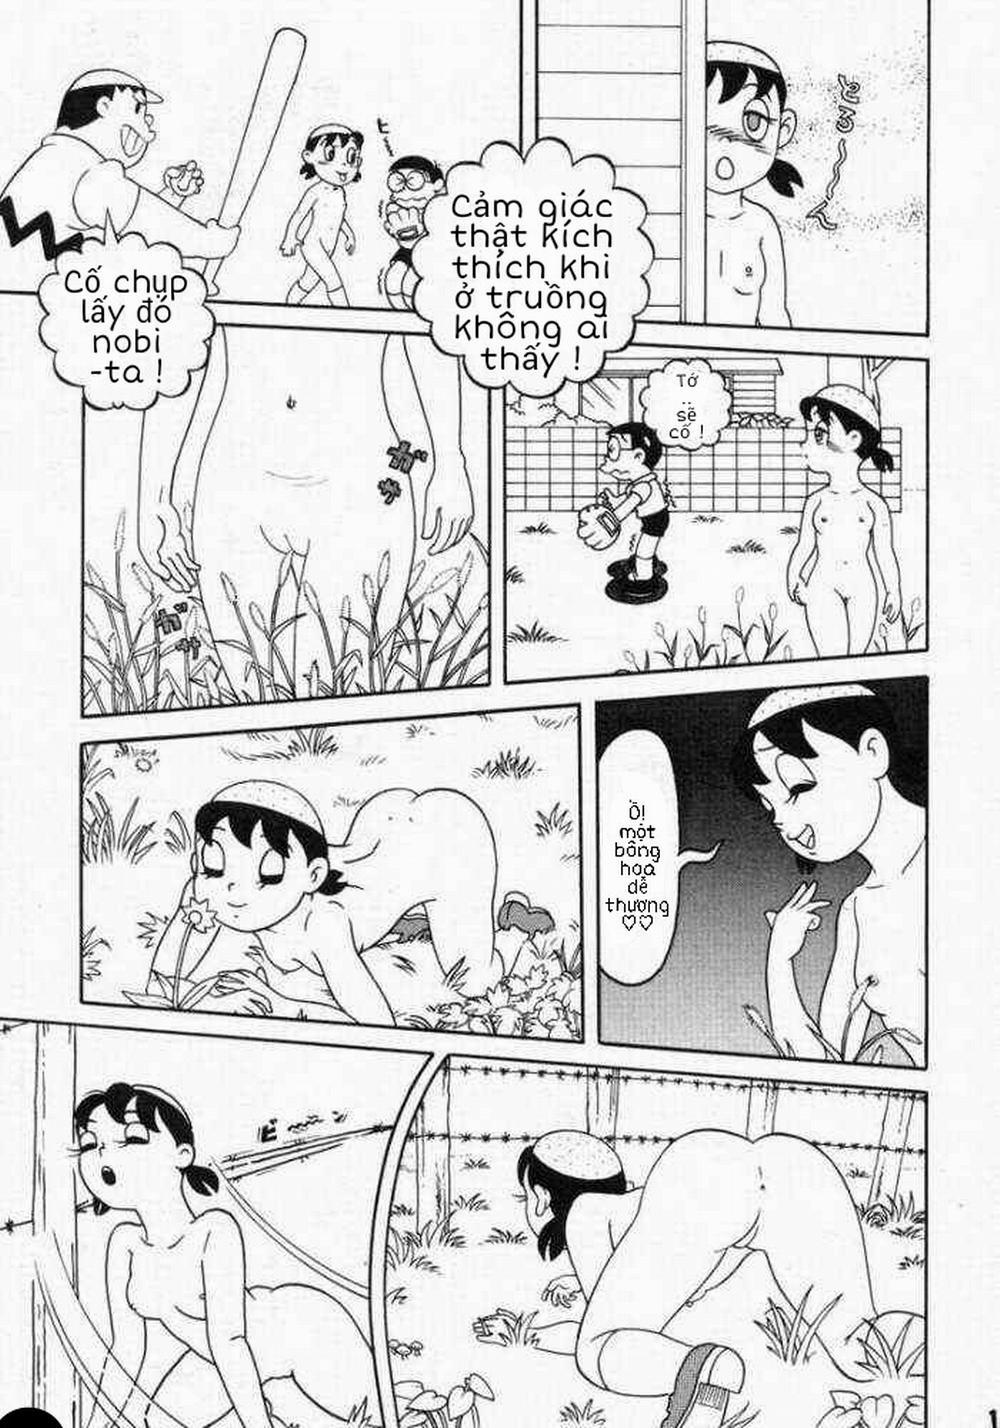 Tuyển Tập Doraemon Doujinshi 18+ Chương 10 Xuka v m t ng h nh Trang 13